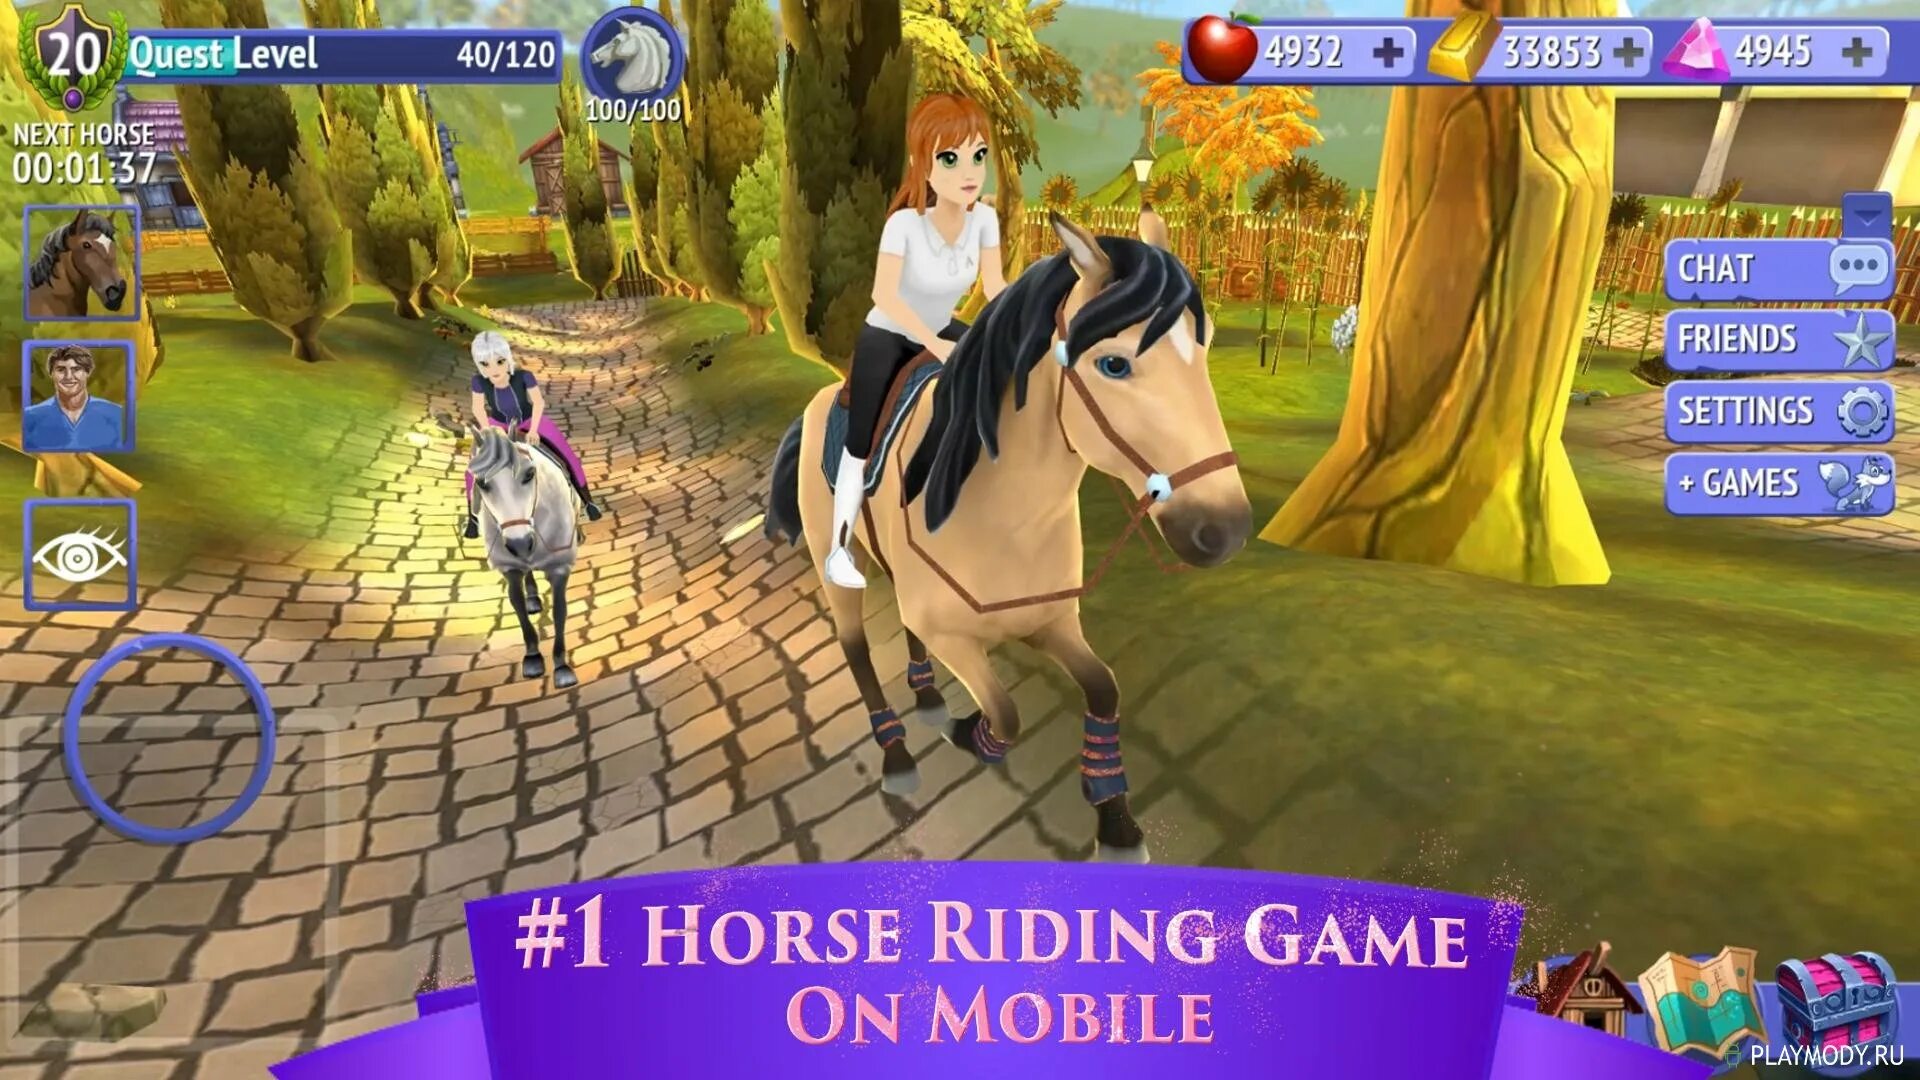 Игра Horse riding Tales. Horse riding Tales лошади из игры. Лошади из игры Хорс Ридинг Талес. Взломанные игры про лошадей.